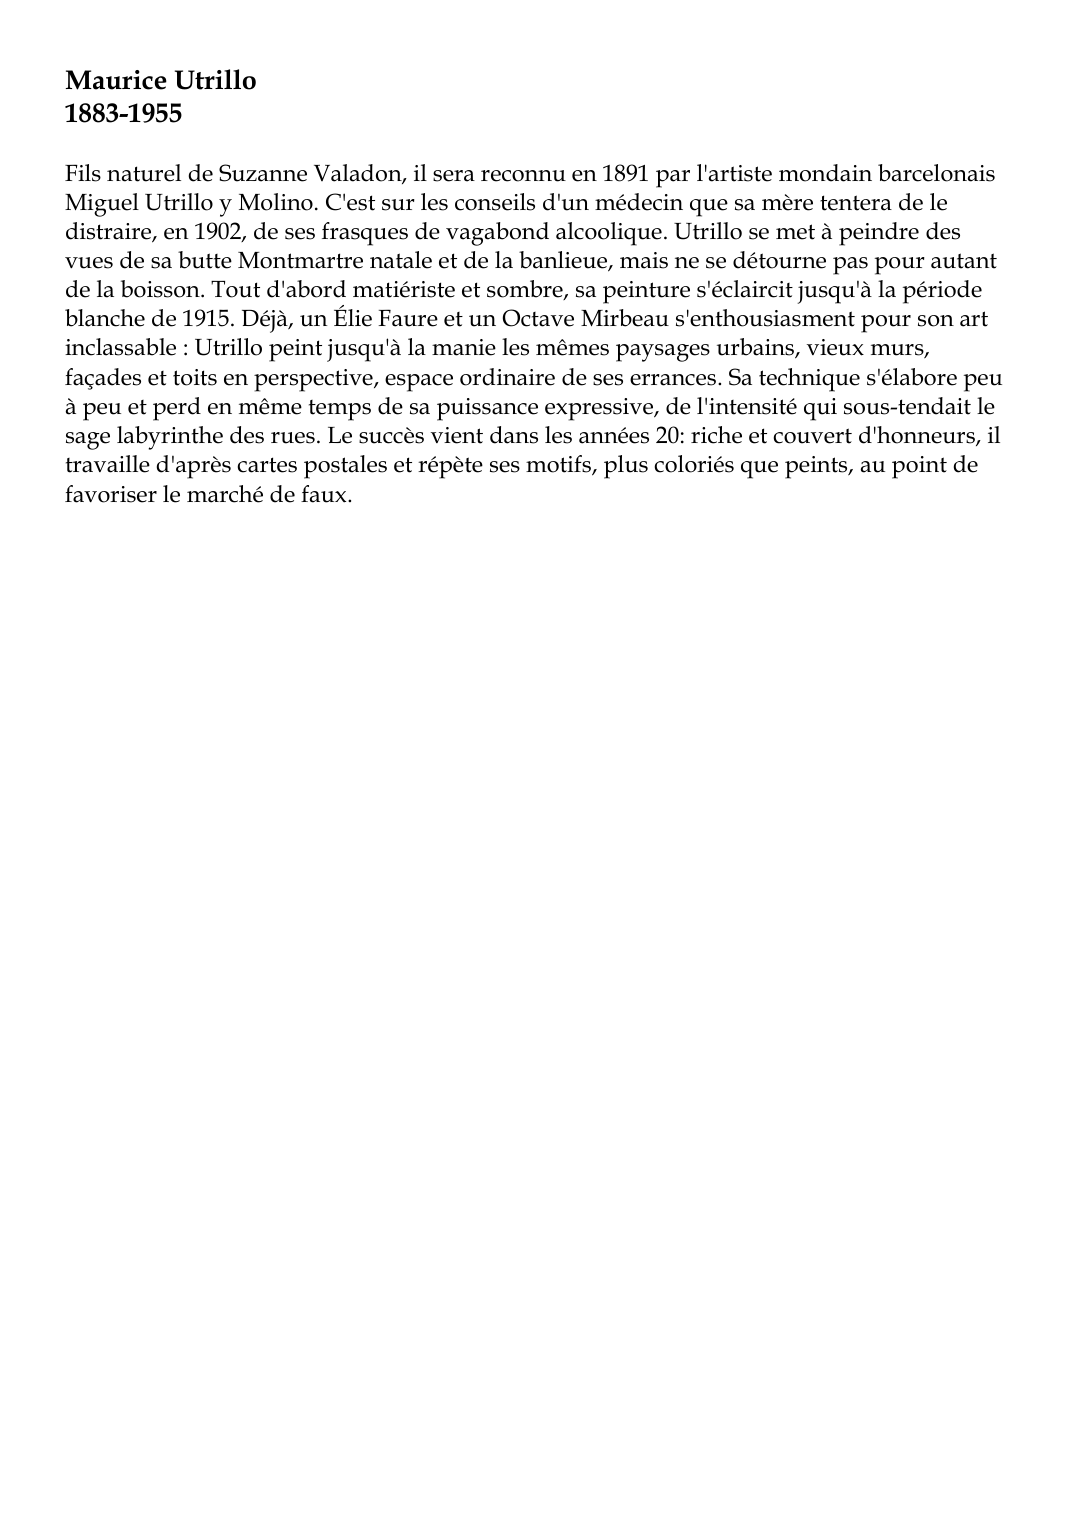 Prévisualisation du document Maurice Utrillo1883-1955Fils naturel de Suzanne Valadon, il sera reconnu en 1891 par l'artiste mondain barcelonaisMiguel Utrillo y Molino.